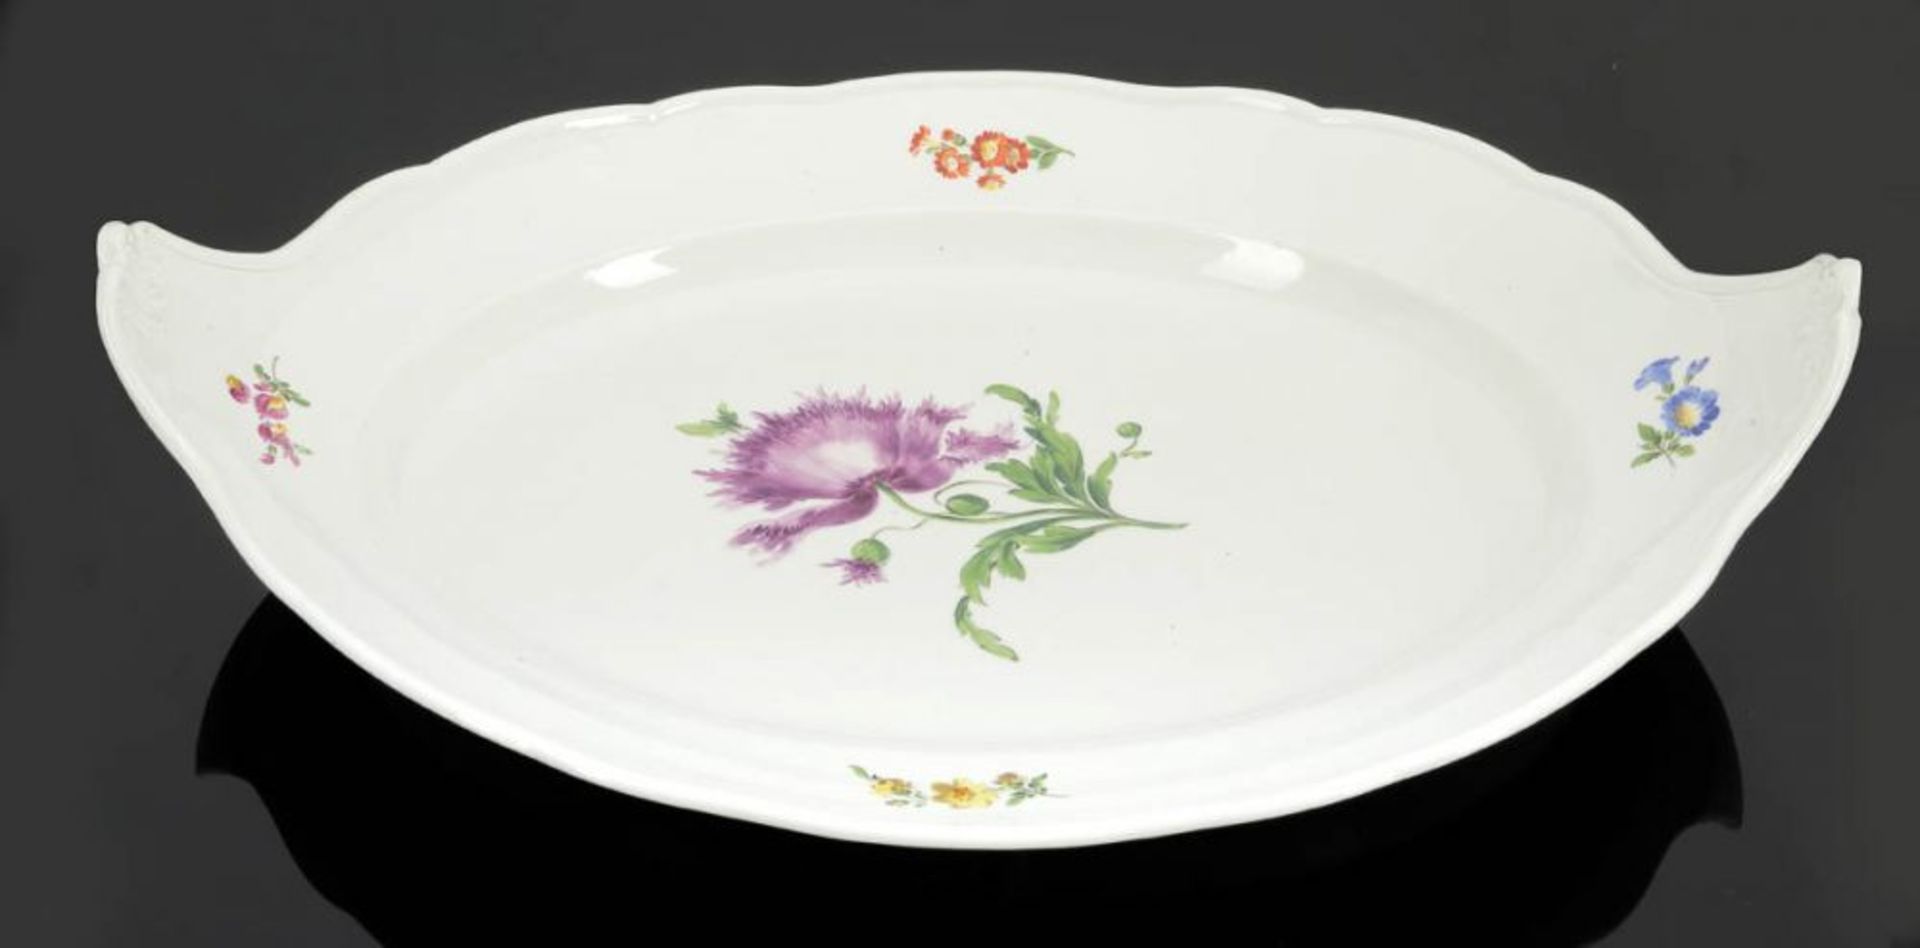 Ovale Platte mit hochgezogenen Griffen Staatliche Porzellan Manufaktur, Meissen 1935-1947. -